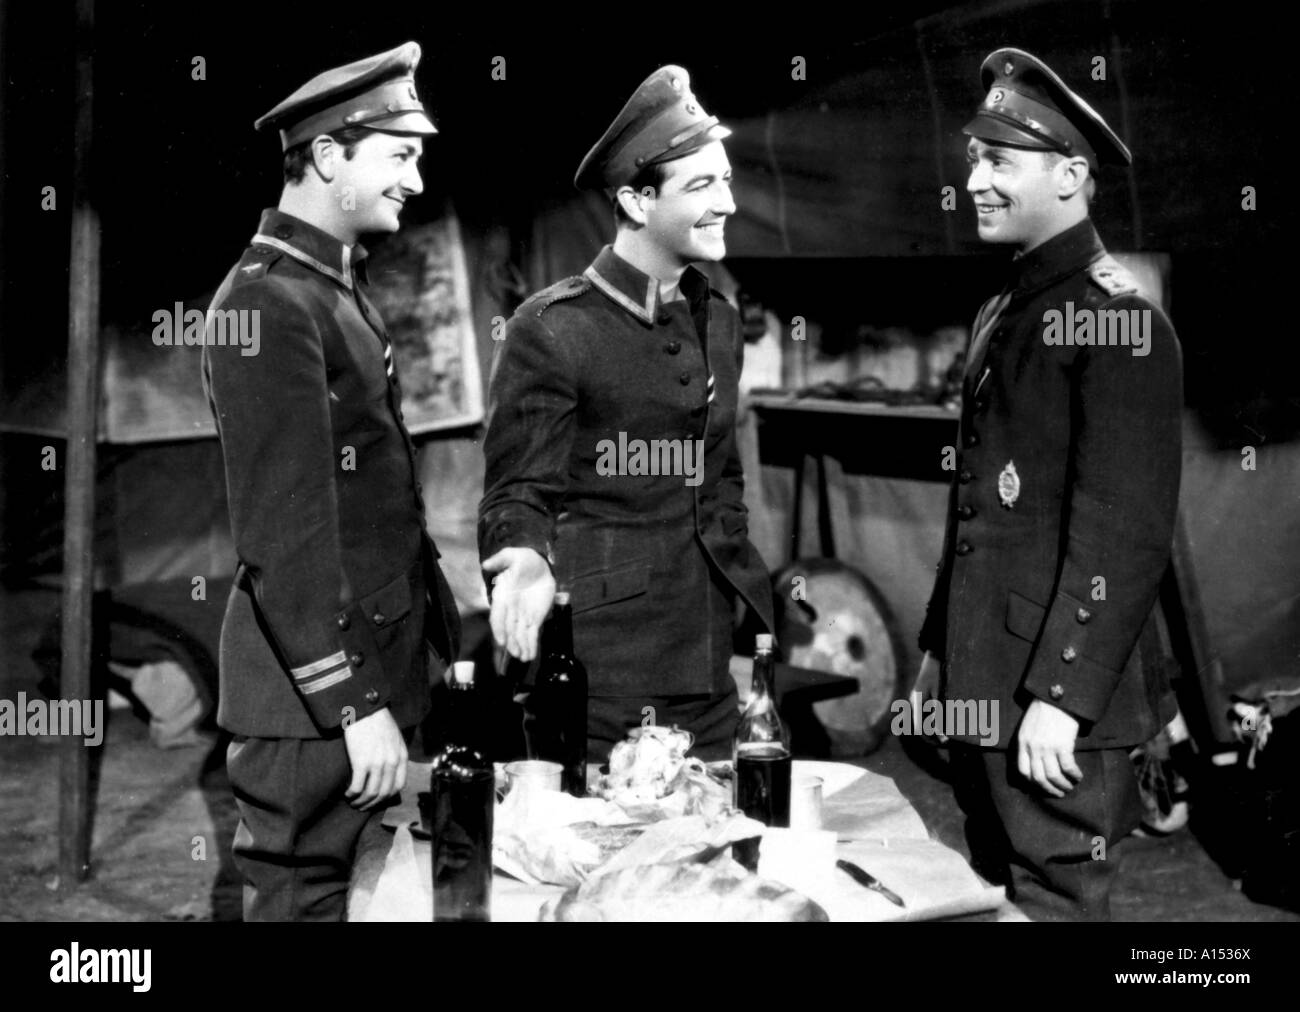 Trois camarades Année 1938 réalisateur Frank Borzage Robert Young Franchot Tone Robert Taylor basé sur le livre de Erich Maria Remarque Banque D'Images